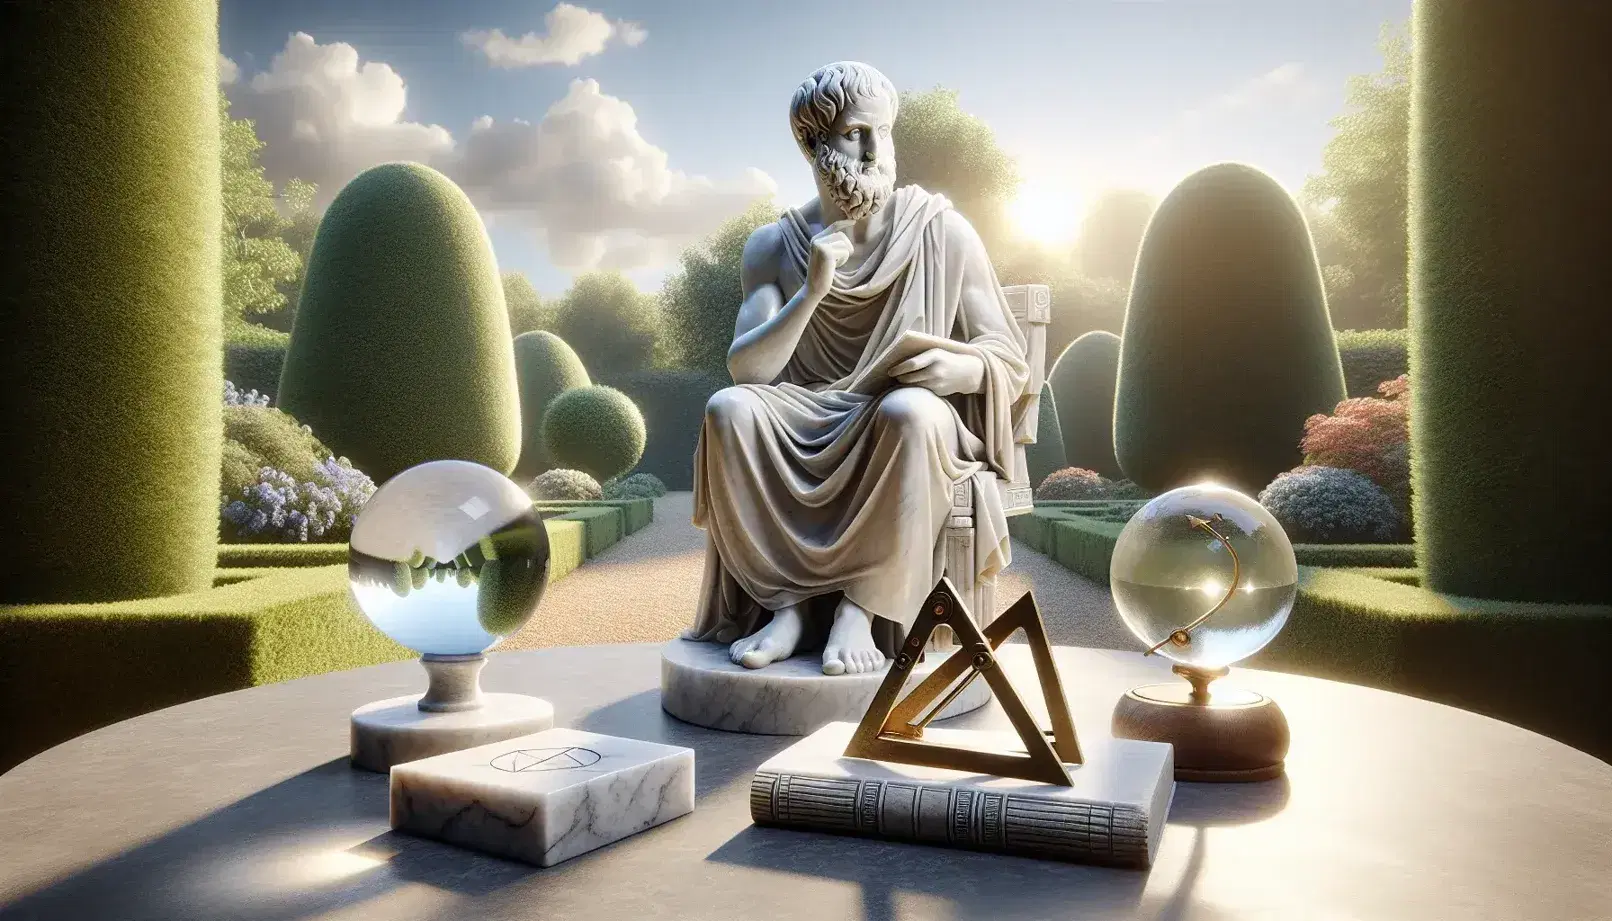 Statua in marmo di Aristotele seduto con libro, mano alzata, oggetti simbolici su tavolo e giardino sfumato sullo sfondo.